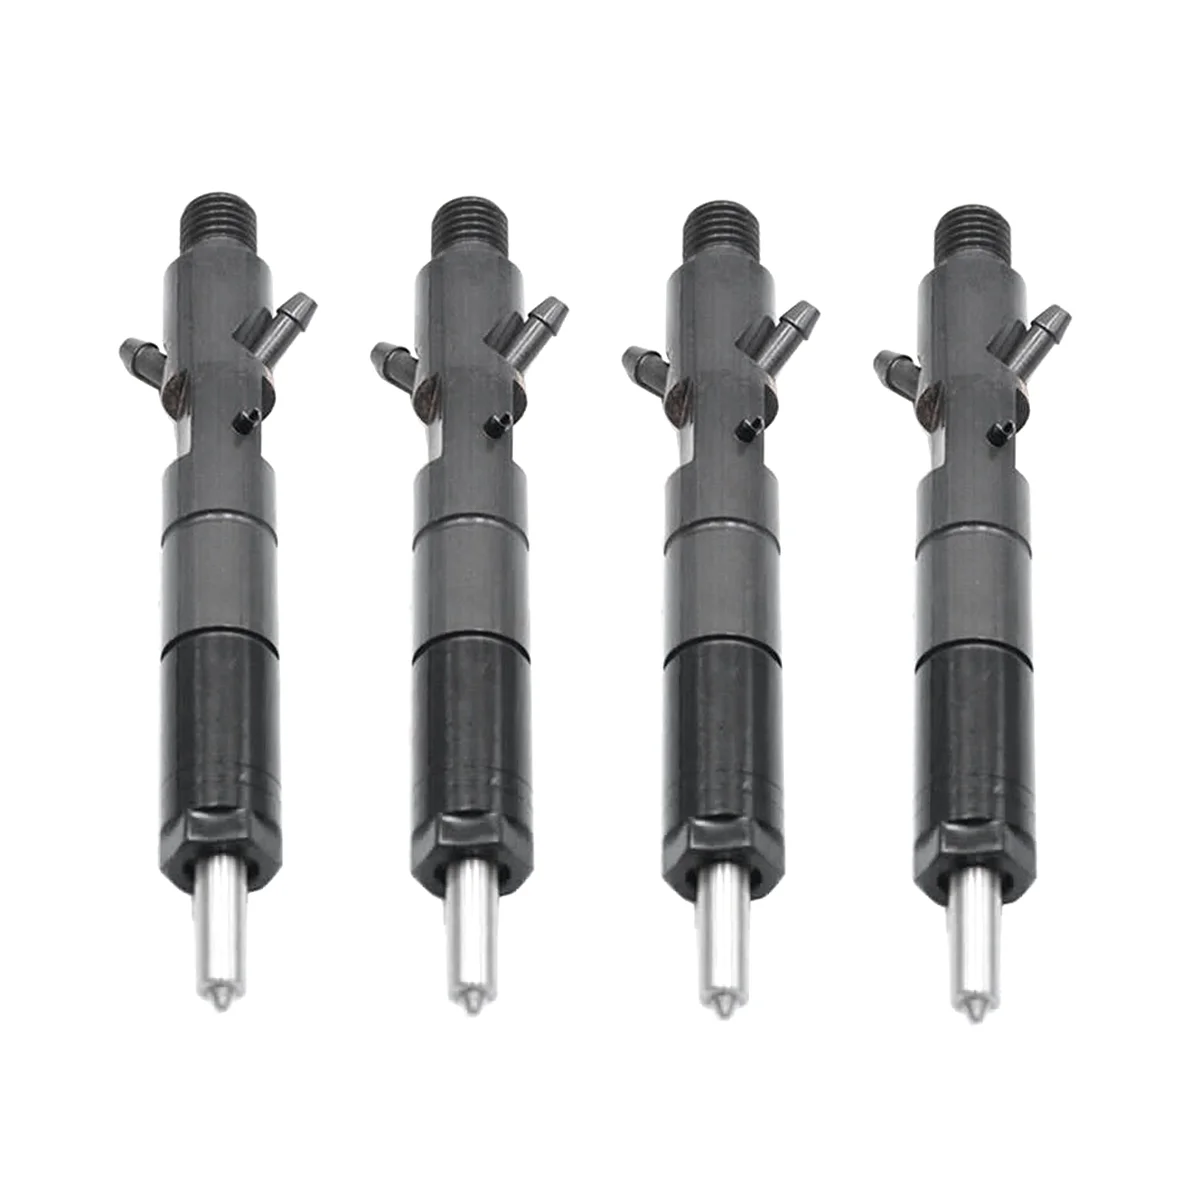 

4Pcs Fuel Injector 2645K016 for JCB Perkins 1100 1103 1104C-44 Engine LJBB03202A